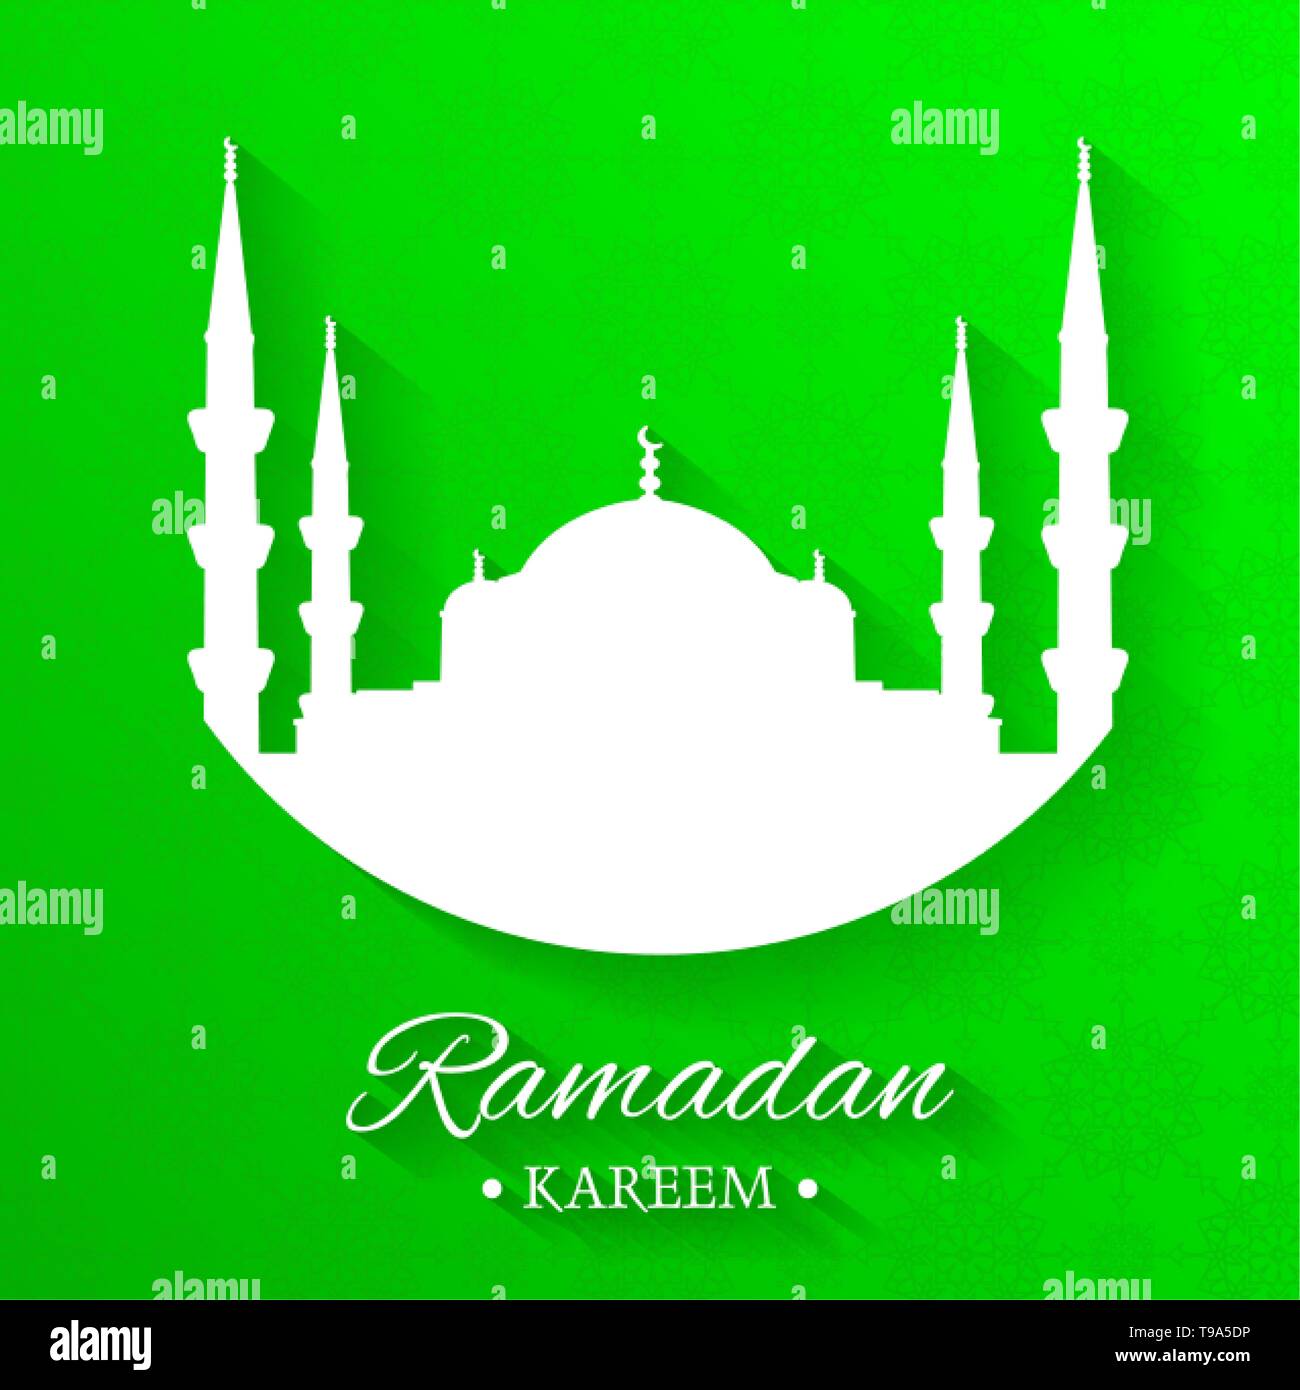 Mosque Silhouette Ramadan Kareem - Green Background: Những đường nét cực kỳ tinh tế và sắc nét của ngôi đền Hồi giáo đêm trên nền xanh lá cây sẽ không làm bạn thất vọng. Hãy thưởng thức những ngôi đền đẹp và hiện đại nhất với các bóng râm đầy tinh tế và tạo ra cảm giác bình yên trong lòng người xem.